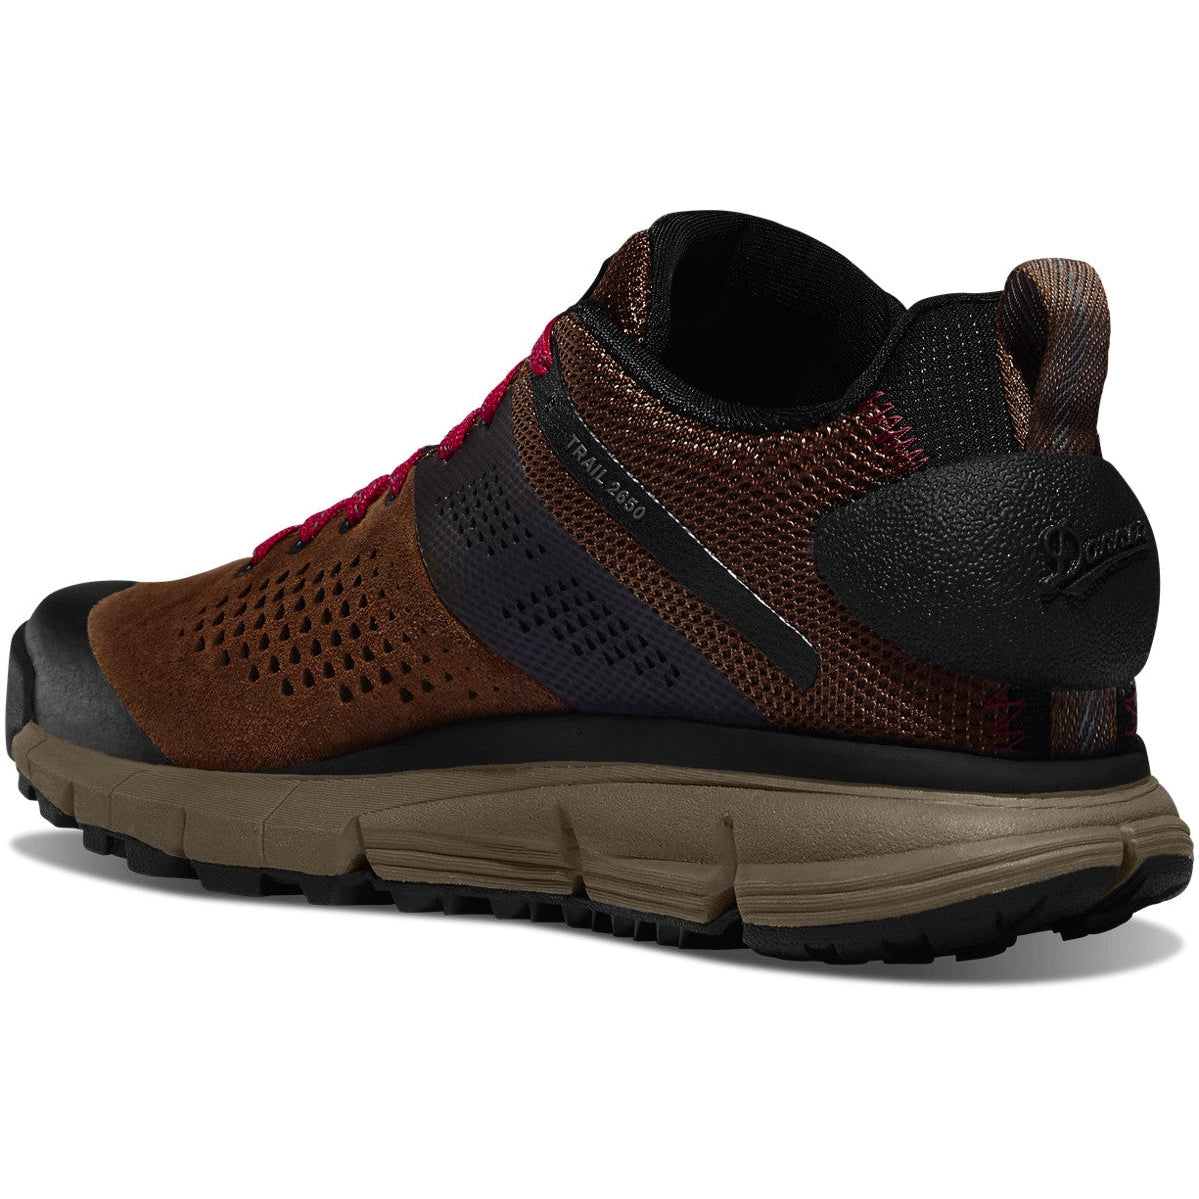 Danner Women's Trail 2650 GTX 3" Hiker Shoe - Brown/Red - 61300  - Overlook Boots